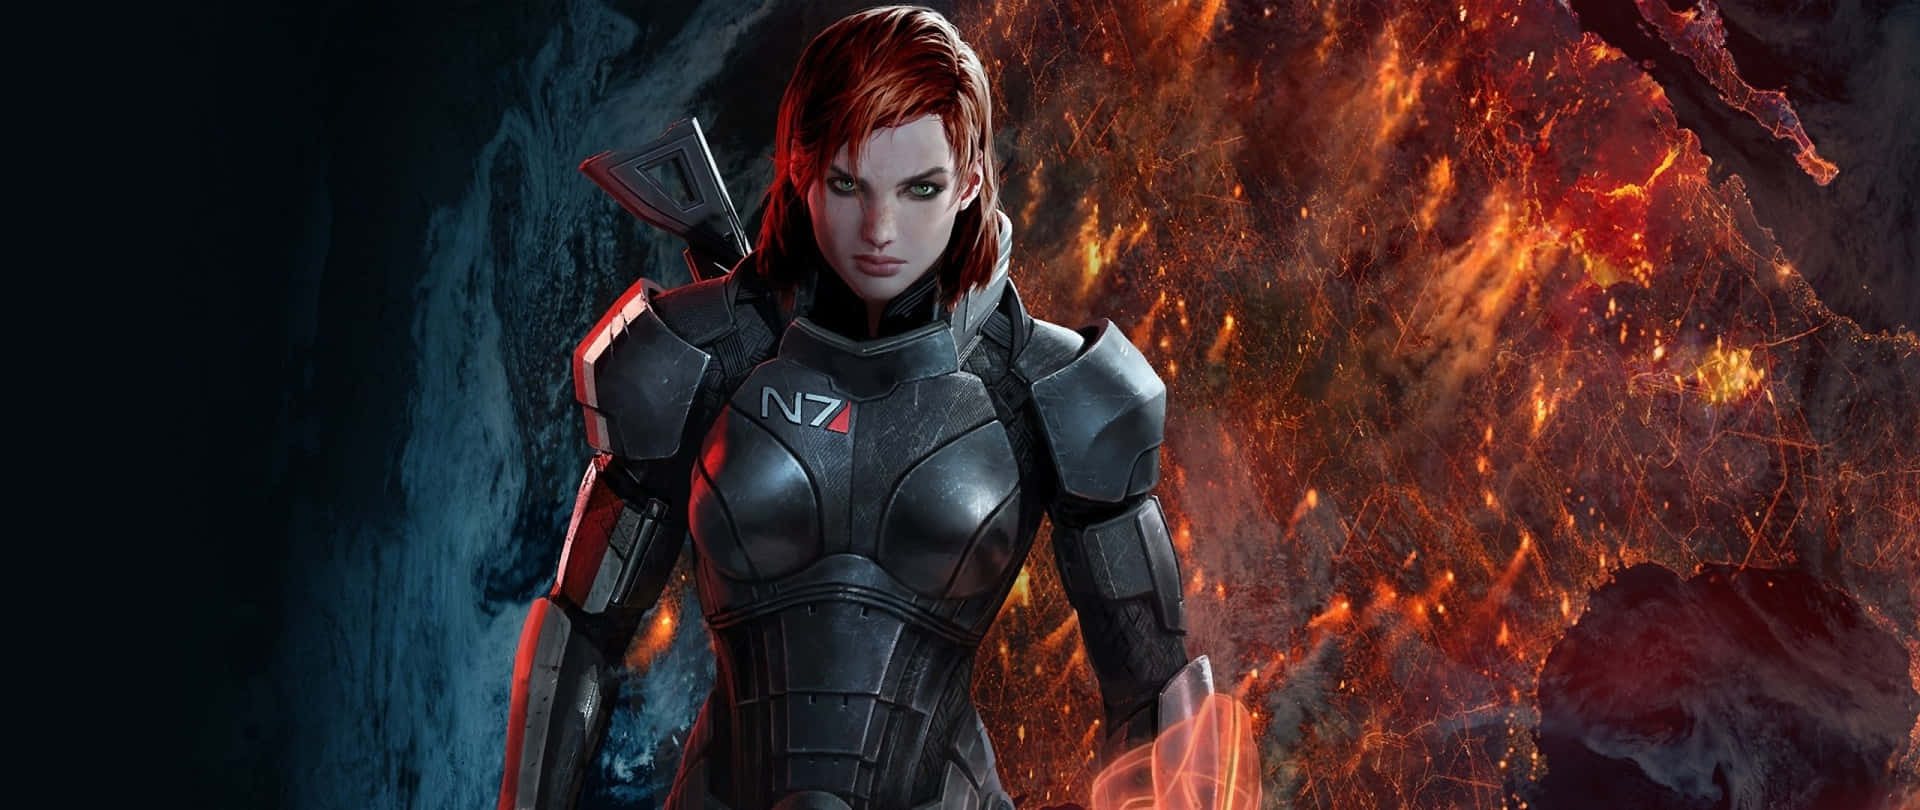 Commander Shepard in Action in Mass Effect Wallpaper